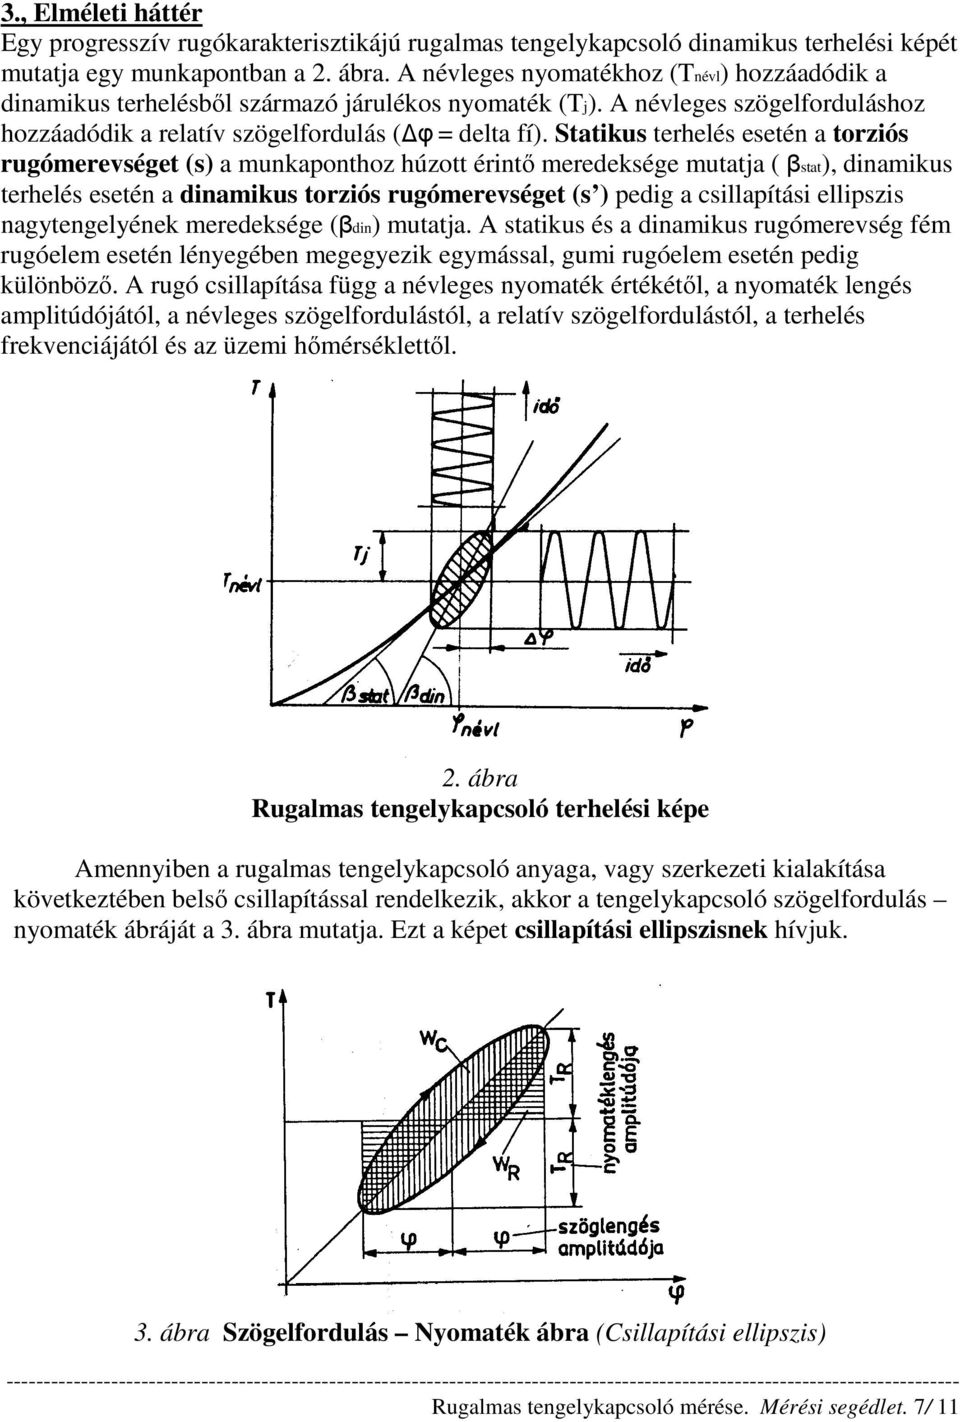 Statikus terhelés esetén a torziós rugómerevséget (s) a munkaponthoz húzott érintı meredeksége mutatja ( βstat), dinamikus terhelés esetén a dinamikus torziós rugómerevséget (s ) pedig a csillapítási